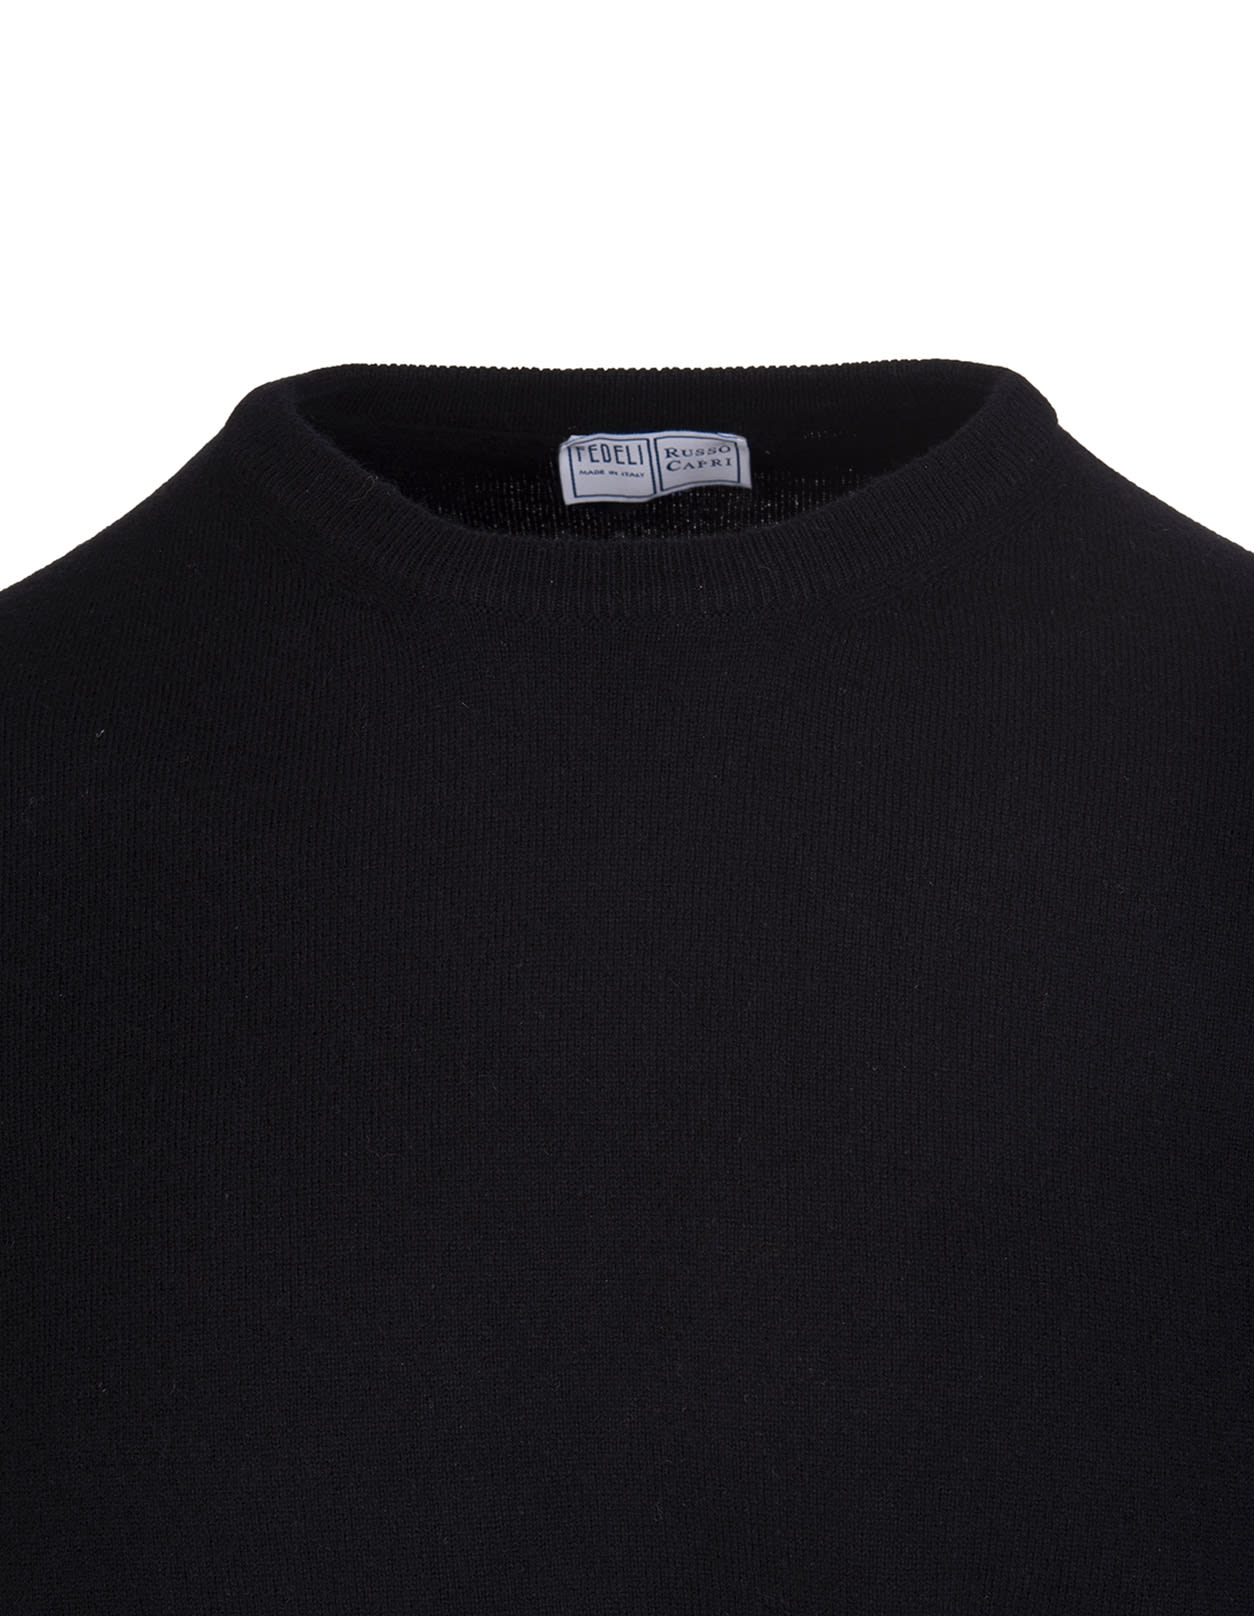 Shop Fedeli Man Black Arg Vintage Pullover